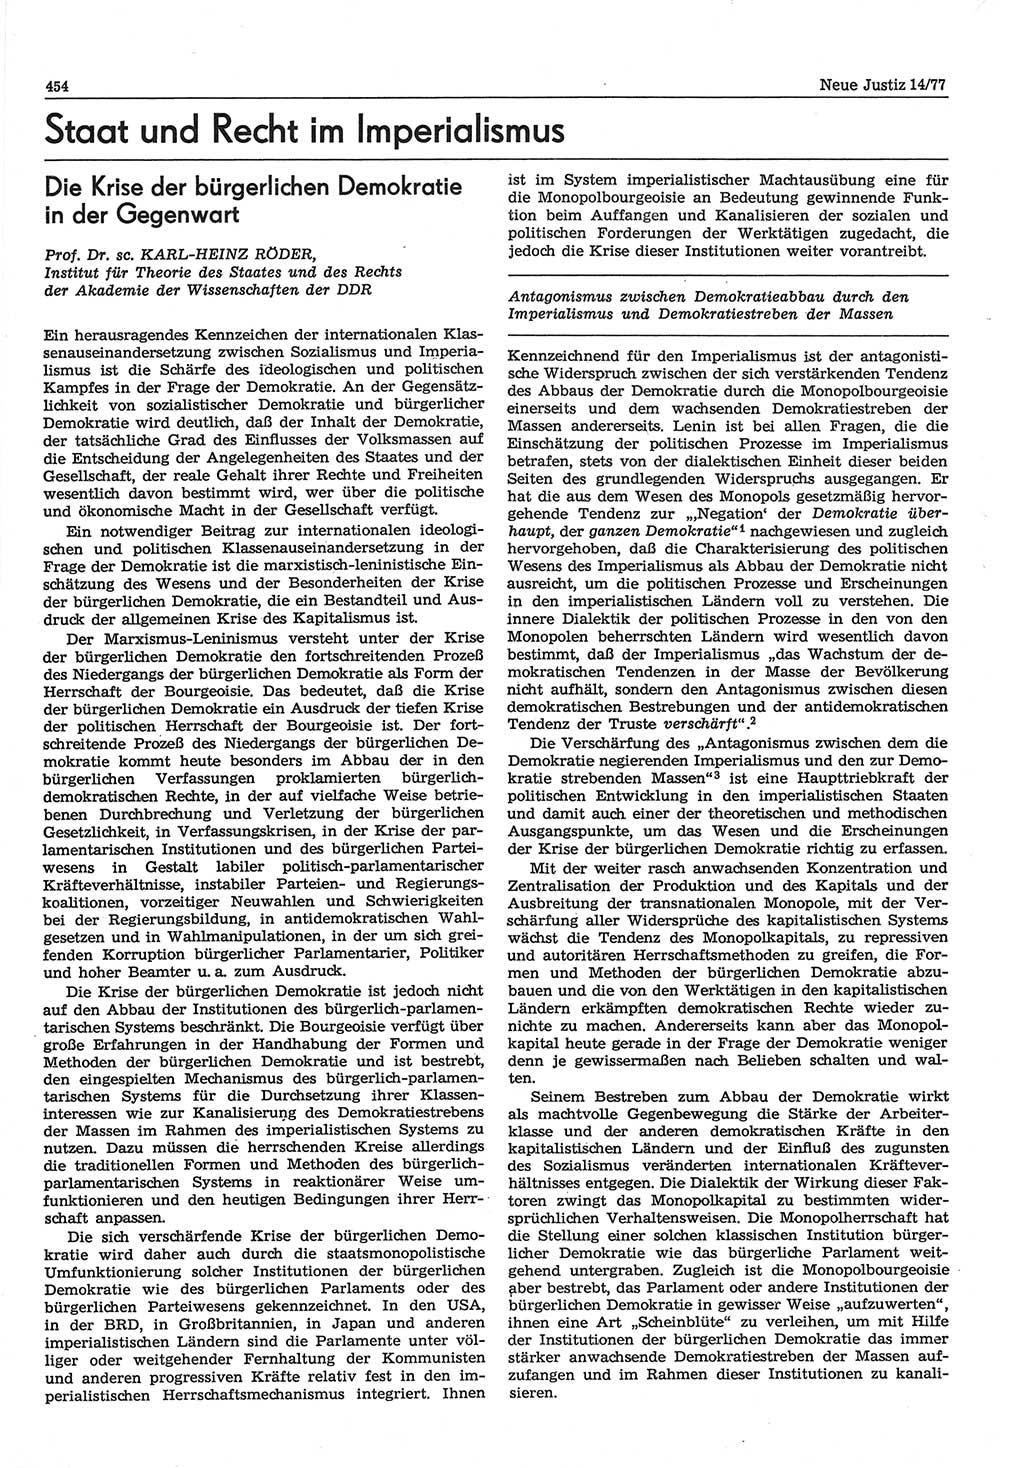 Neue Justiz (NJ), Zeitschrift für Recht und Rechtswissenschaft-Zeitschrift, sozialistisches Recht und Gesetzlichkeit, 31. Jahrgang 1977, Seite 454 (NJ DDR 1977, S. 454)